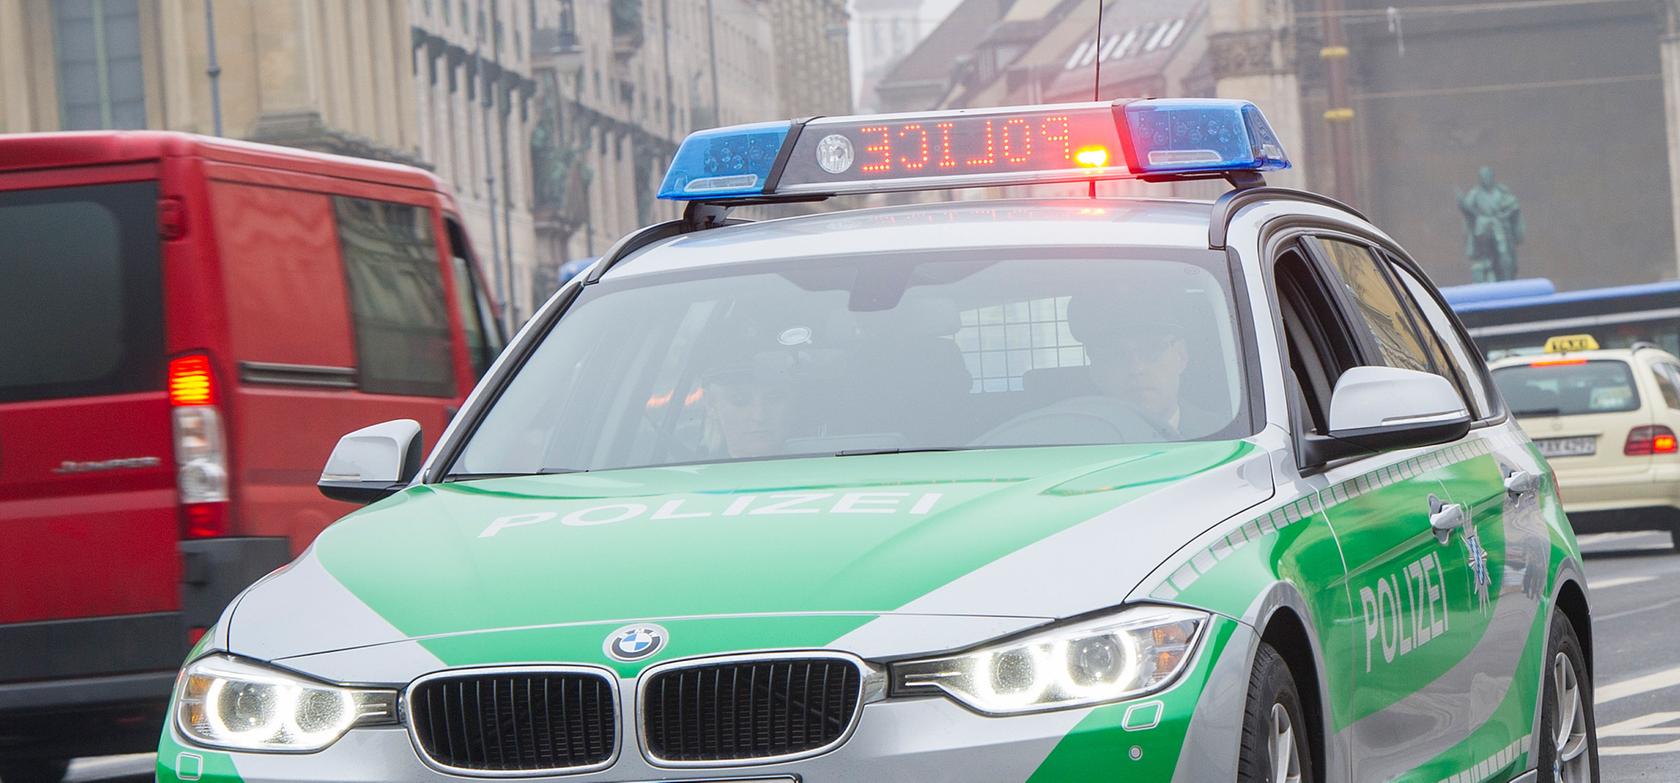 Bayerns Polizei testet neue Anhalte-Signale